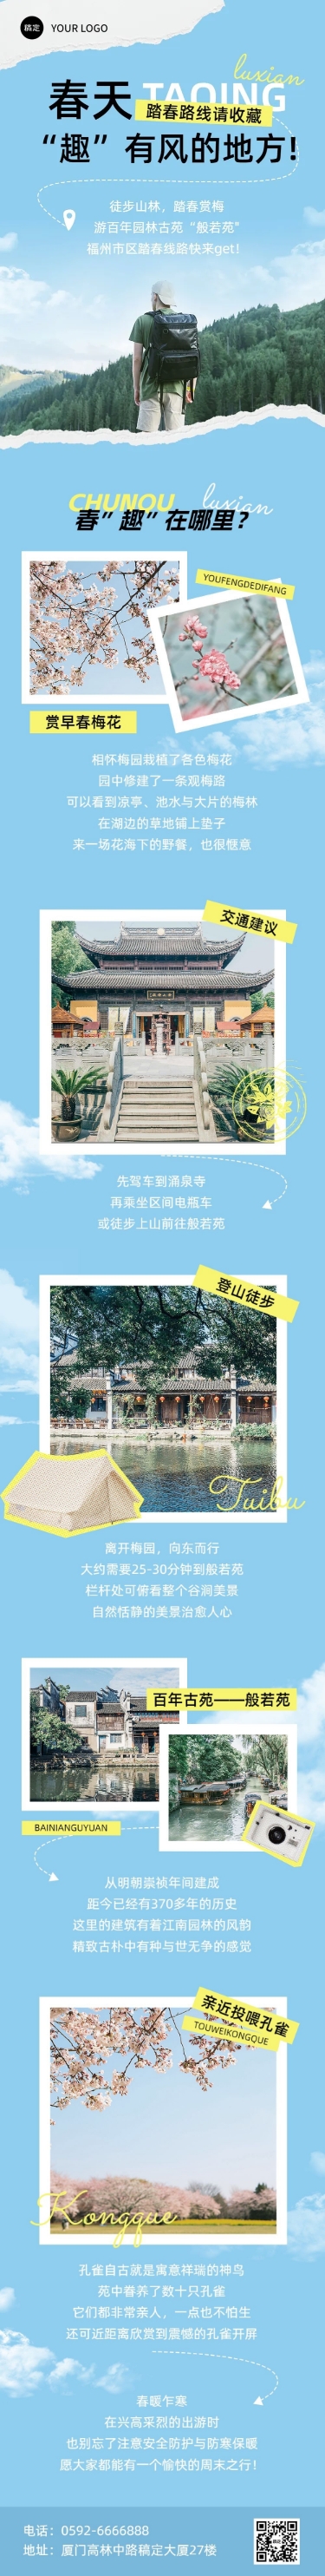 清爽风春游旅游路线宣传微信公众号文章长图